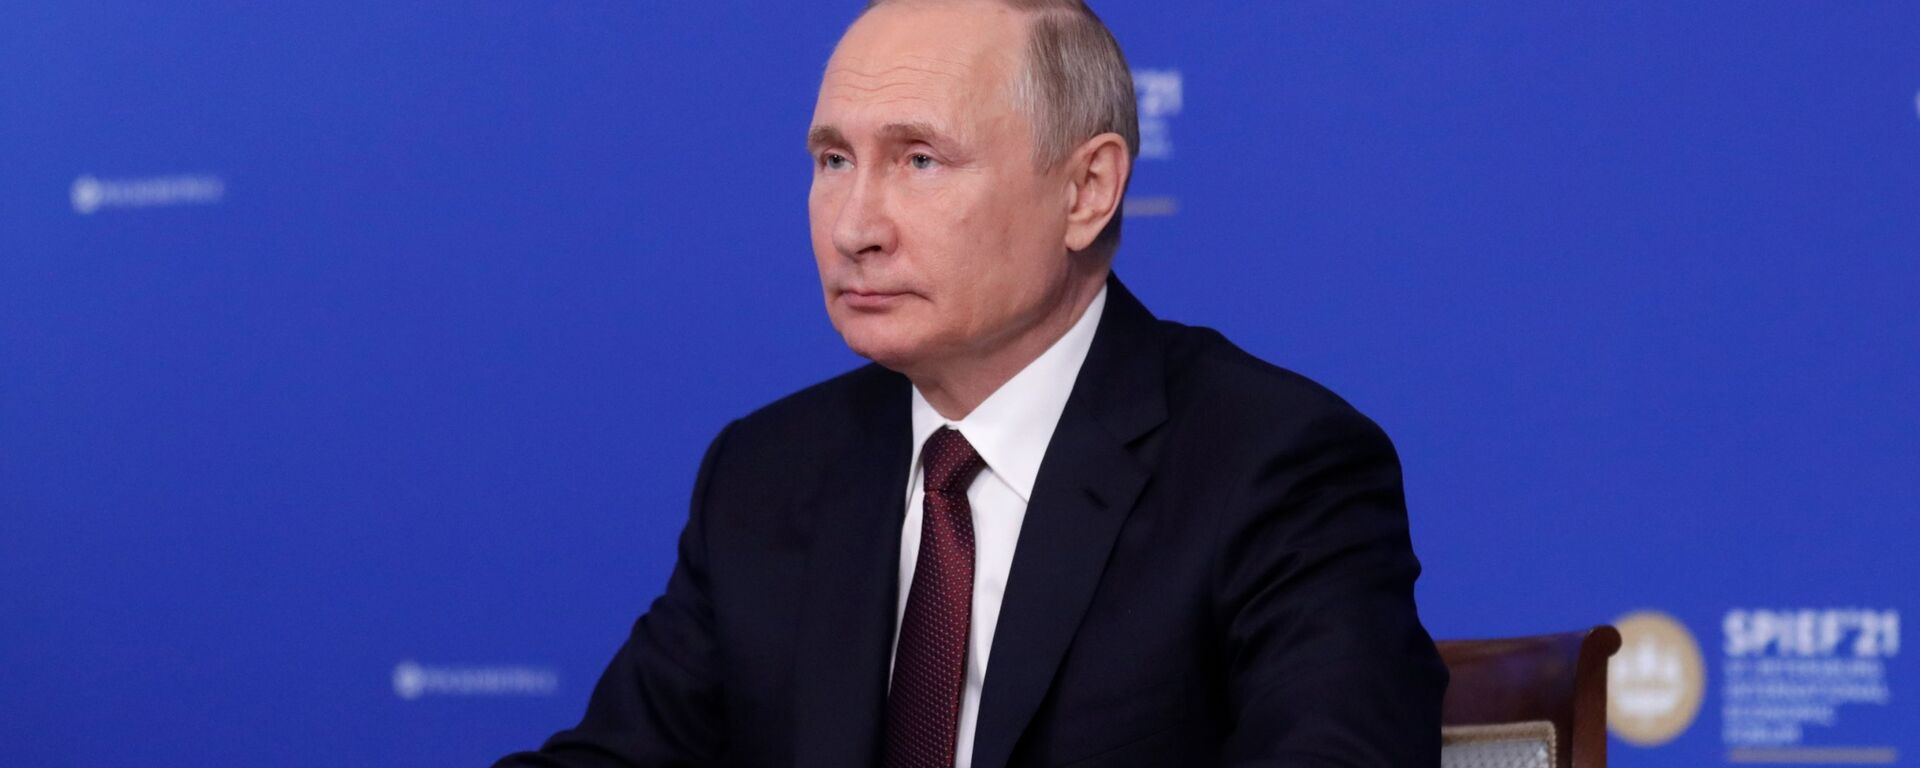 الرئيس الروسي فلاديمير بوتين خلال المنتدى الاقتصادي الدولي سانت بطرسبورغ 2021 - سبوتنيك عربي, 1920, 11.06.2021